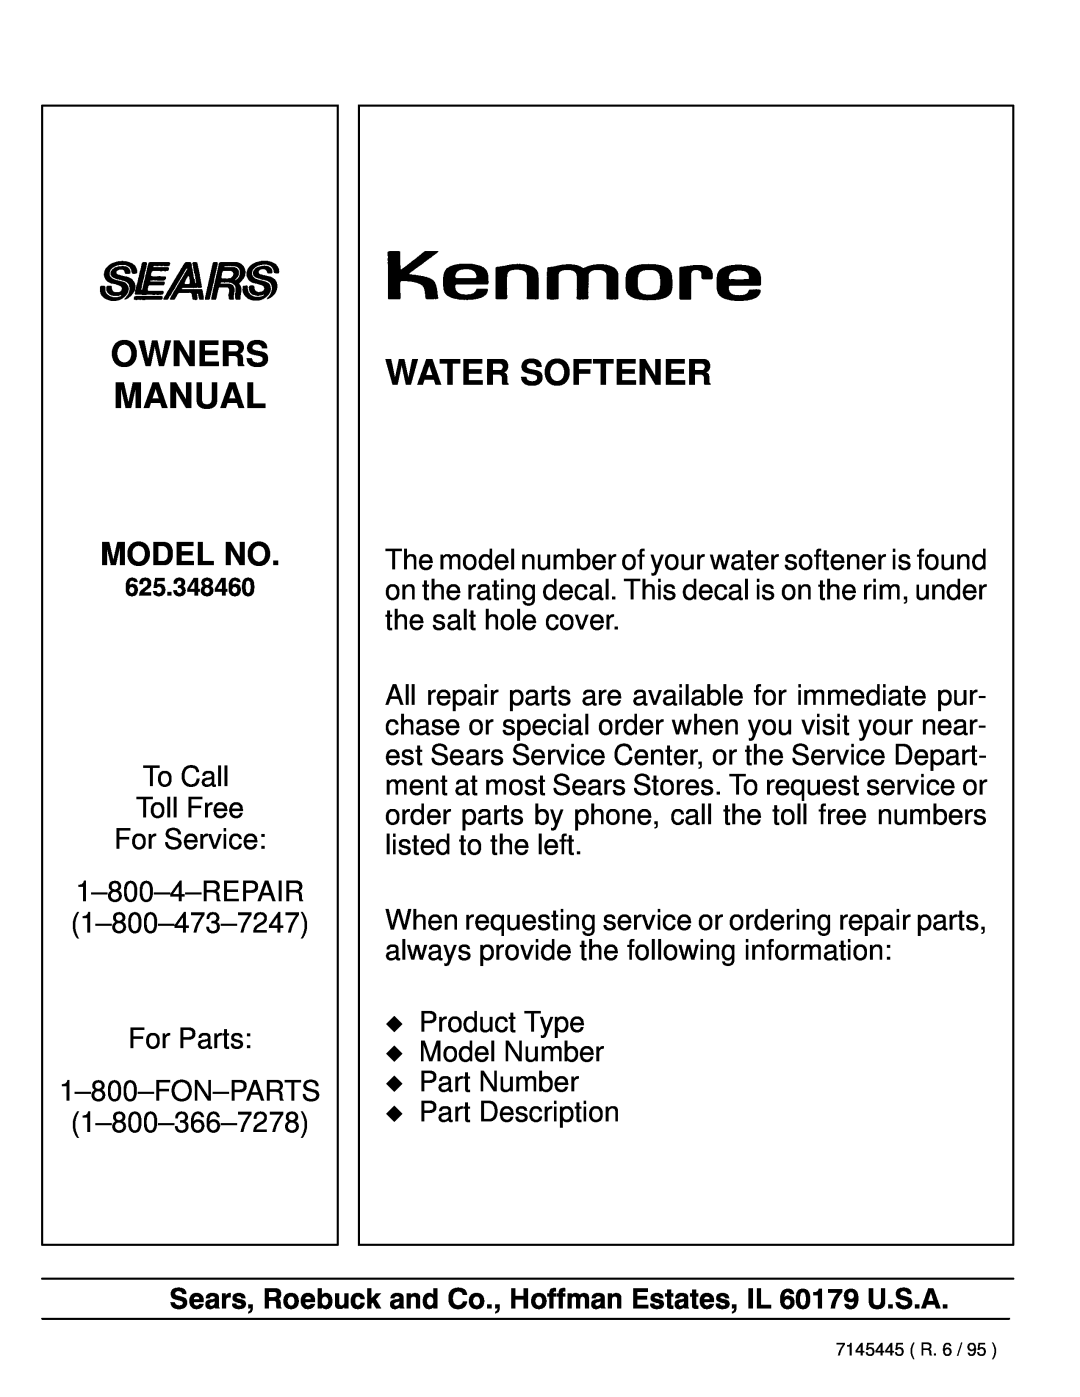 Kenmore 625.348460 owner manual Owners Manual, Water Softener, Model No 